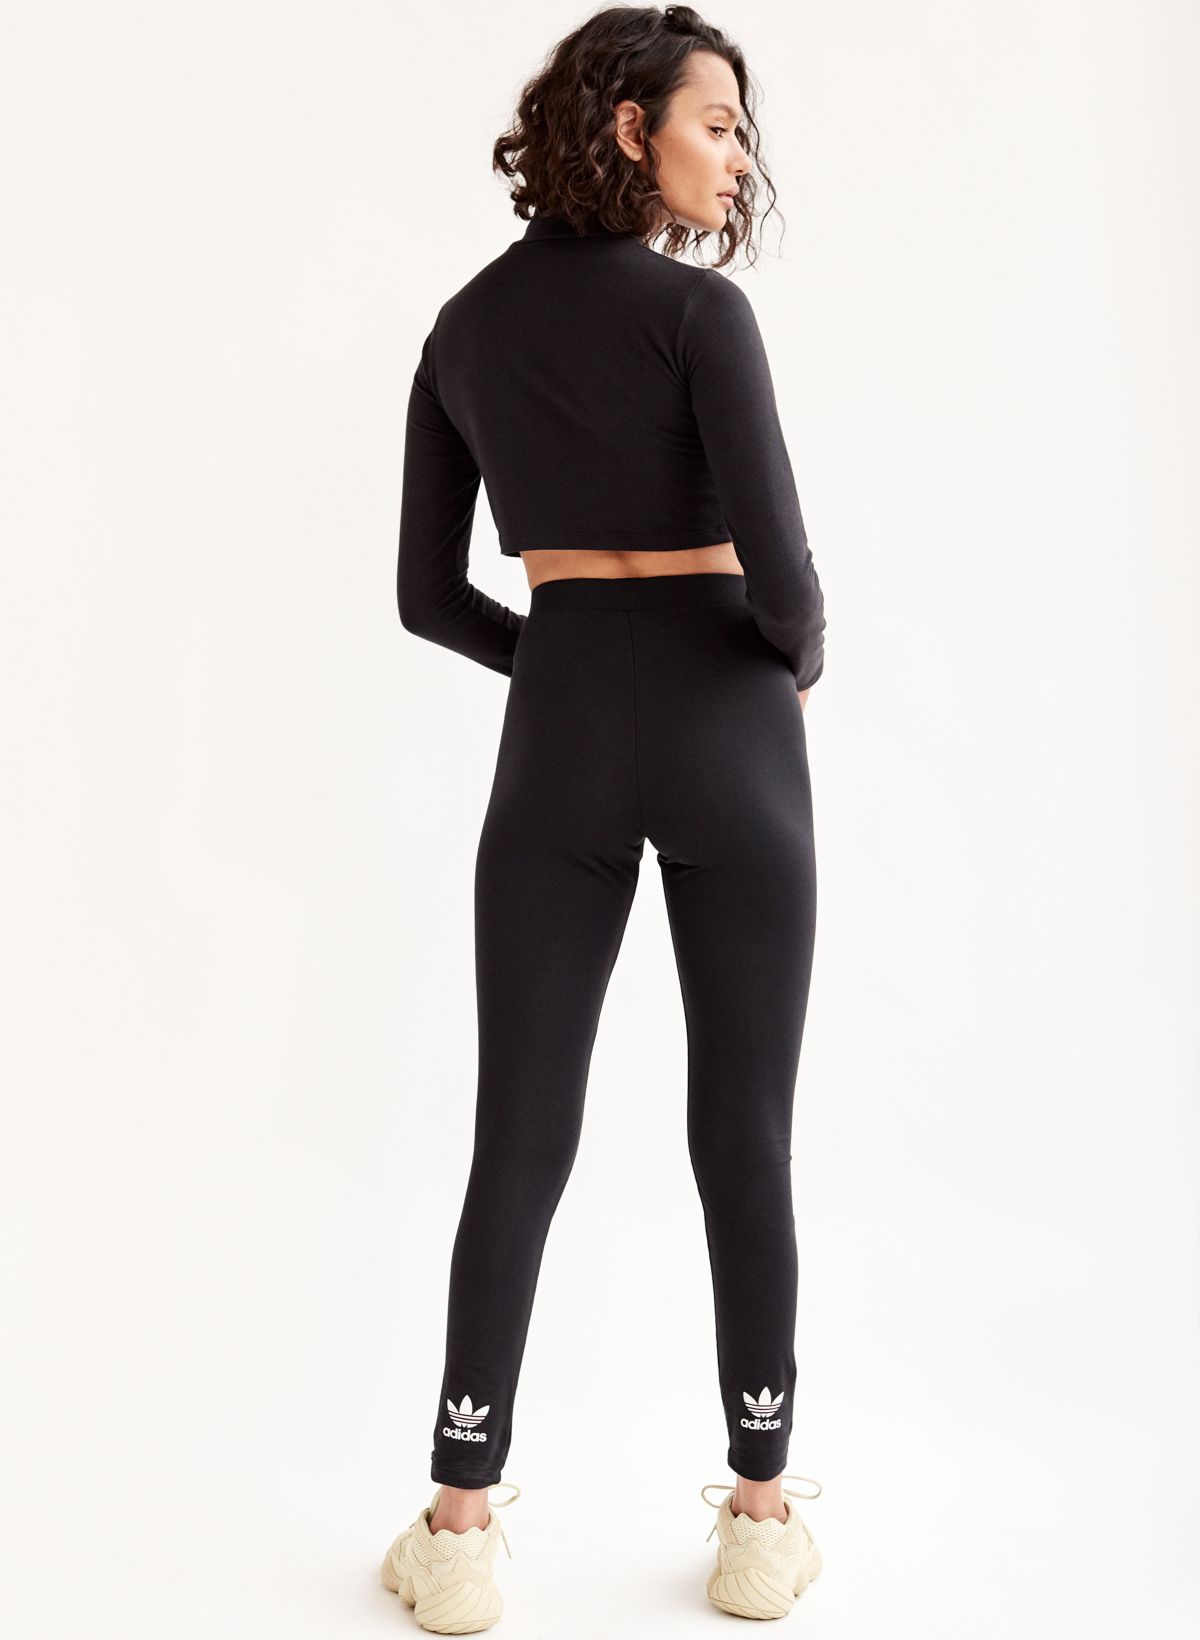 Adidas Trefoil Logo High Waisted Leggings Womens Size S Black